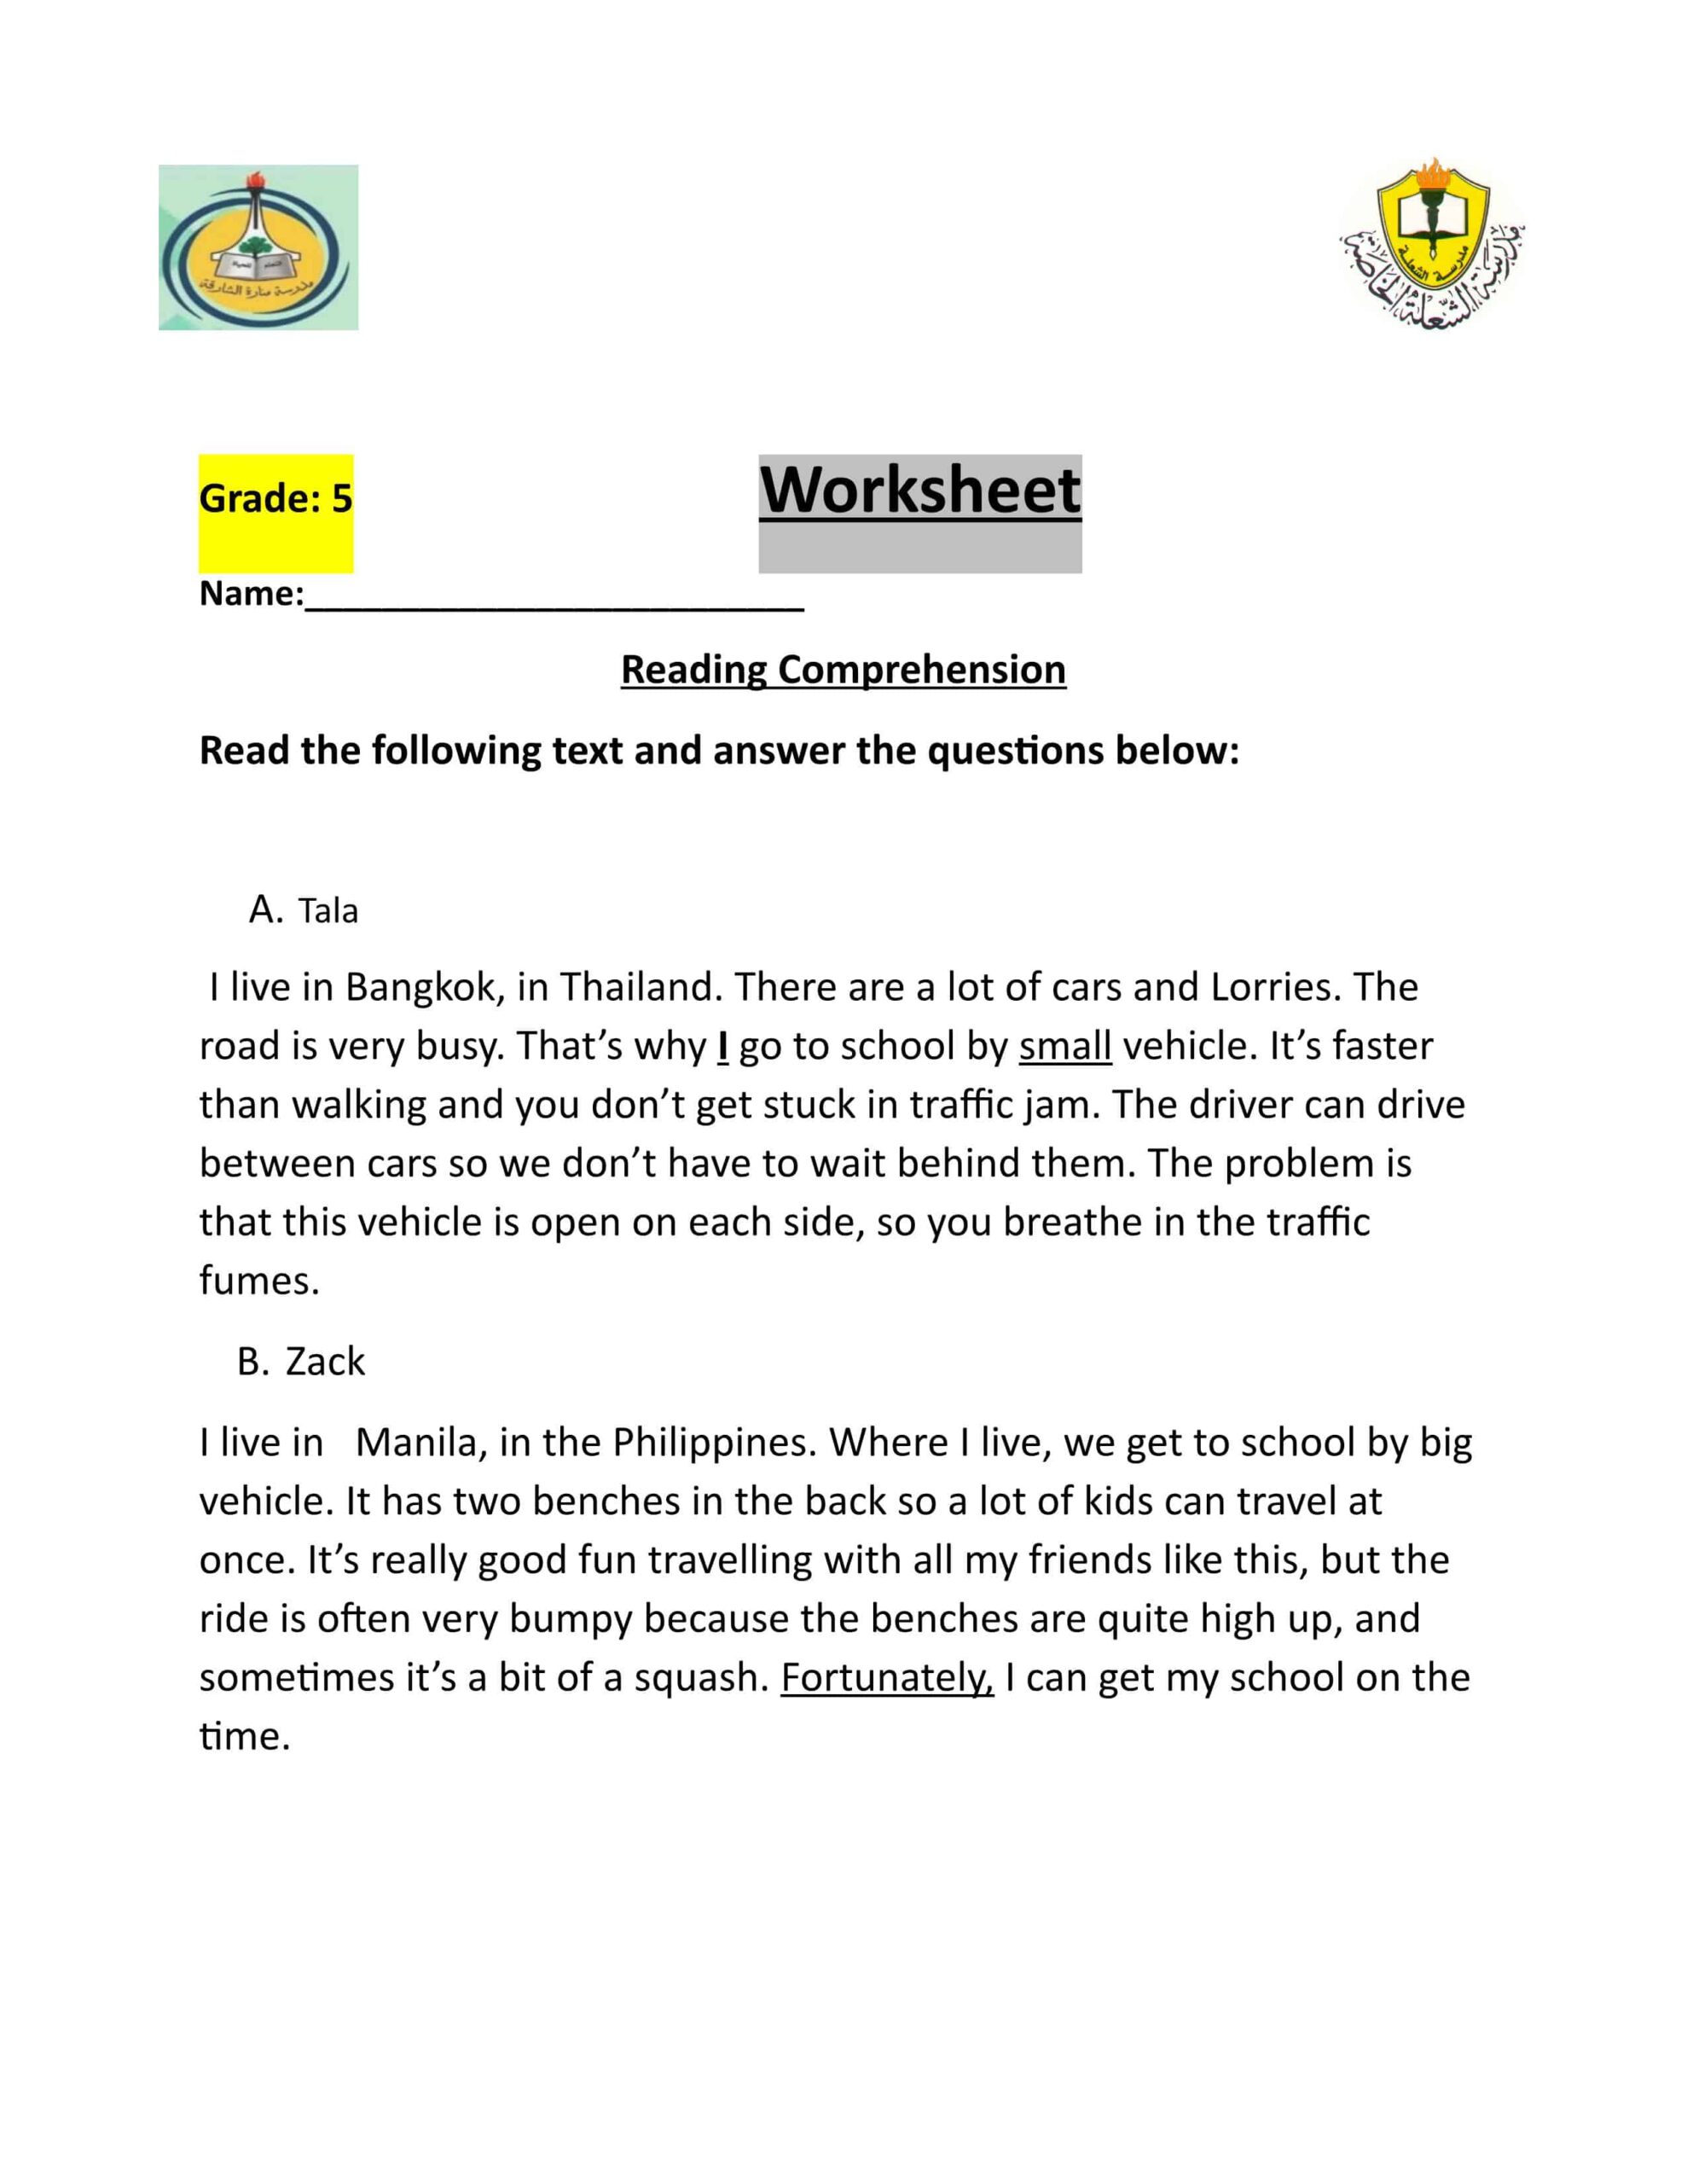 أوراق عمل Worksheet للامتحان اللغة الإنجليزية الصف الخامس